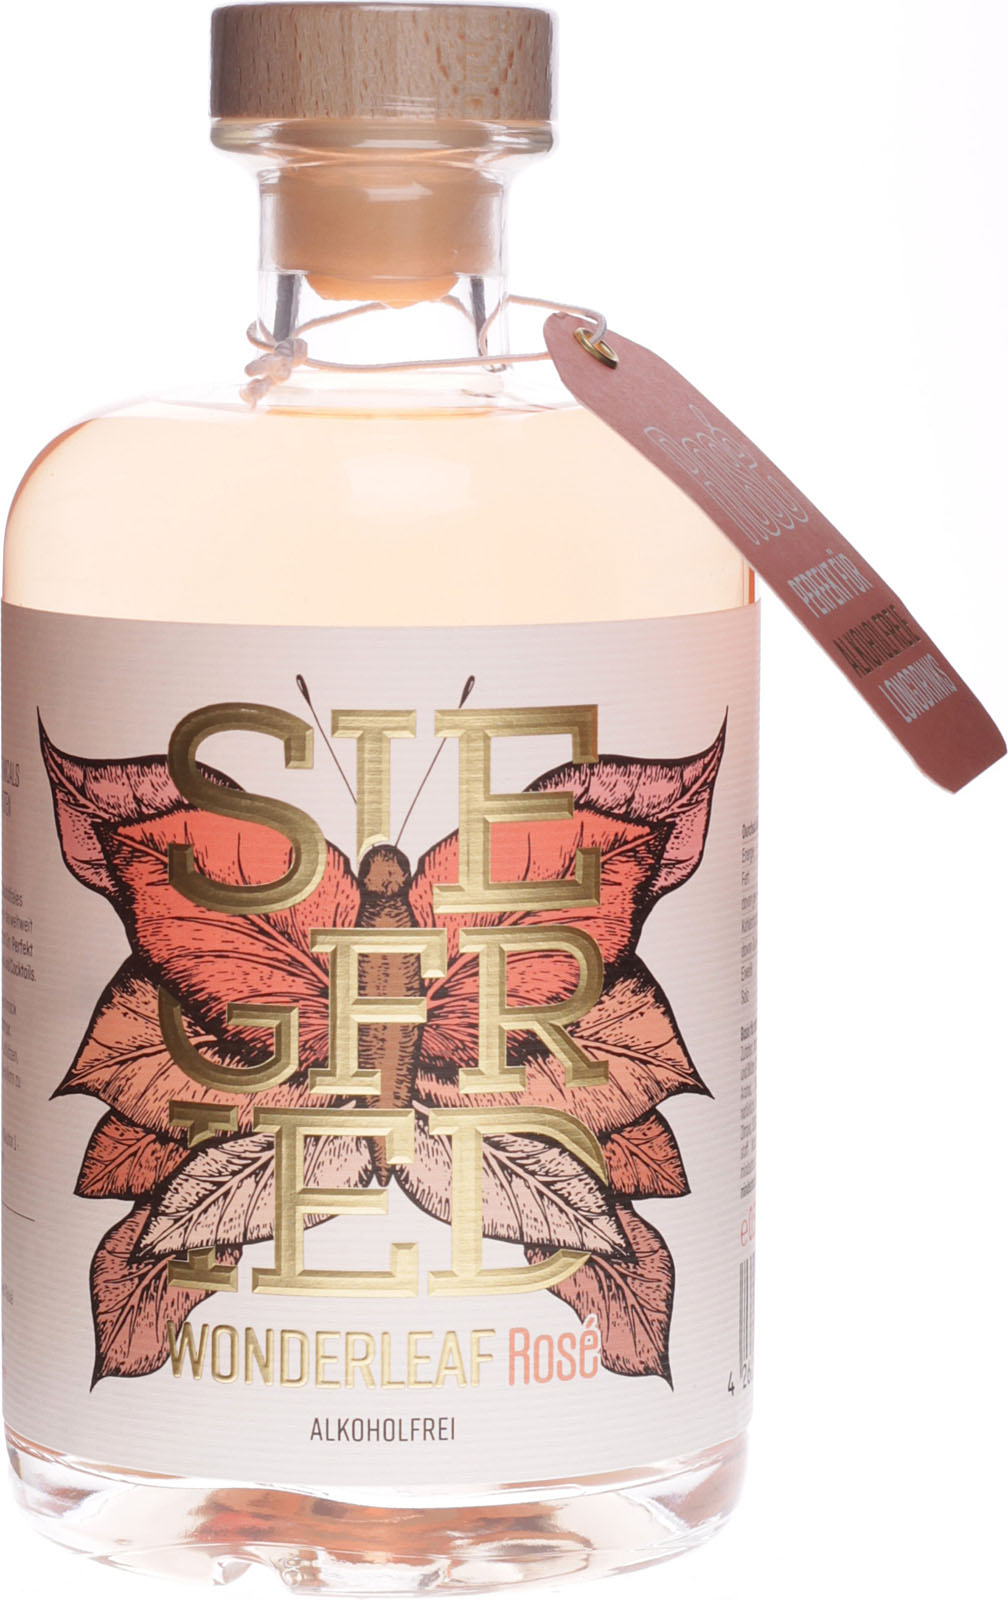 Shop Liter 0,5 Wonderleaf Rose im alkoholfrei Siegfried